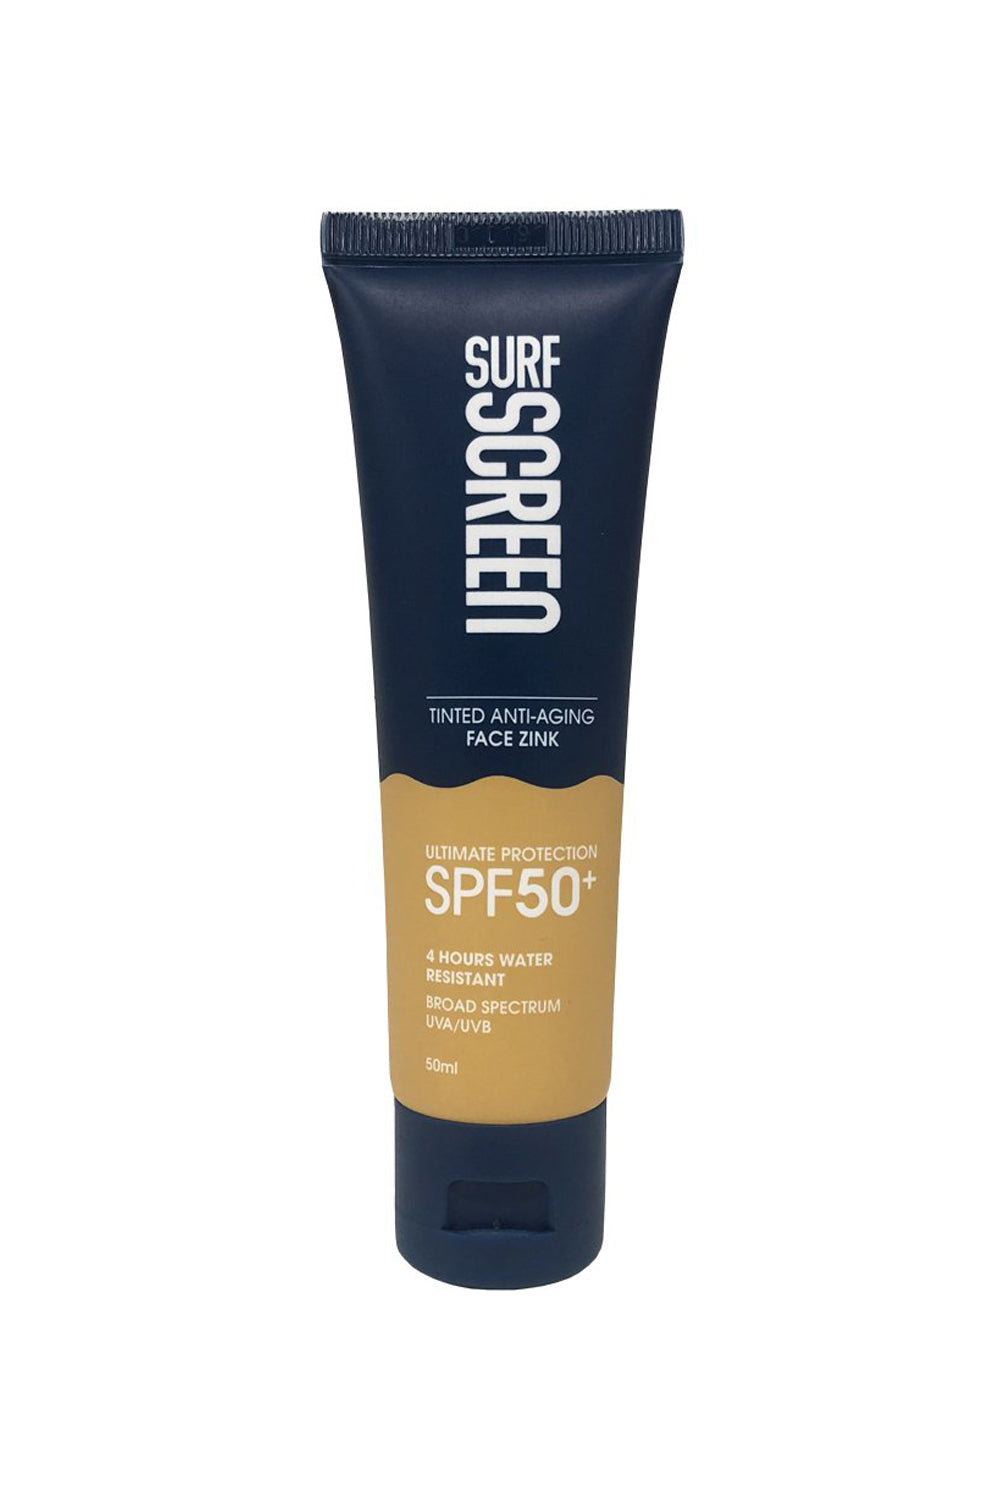 Surf Screen Sunscreen 60ml